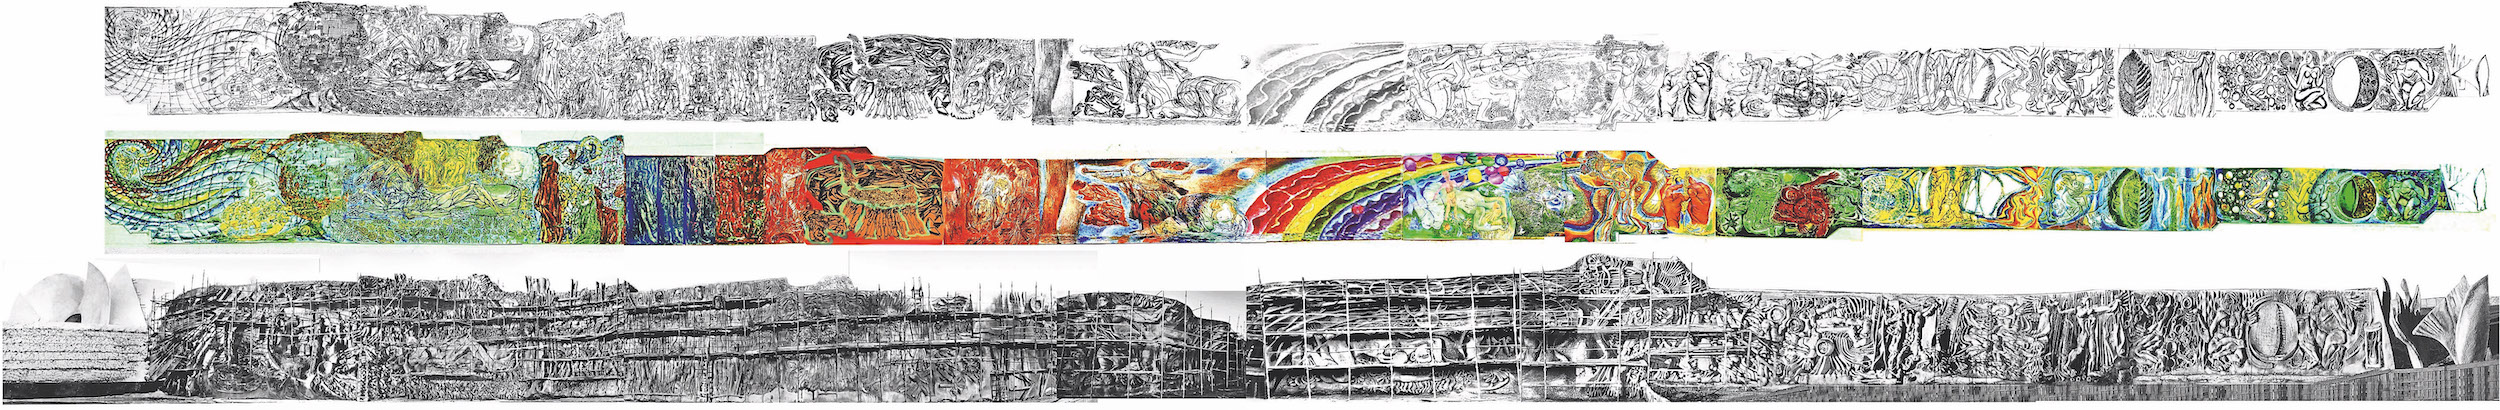 Эскиз композиций, цветная композиция (полихромия) и фото-развертка «Стены памяти» из архива АРВМ